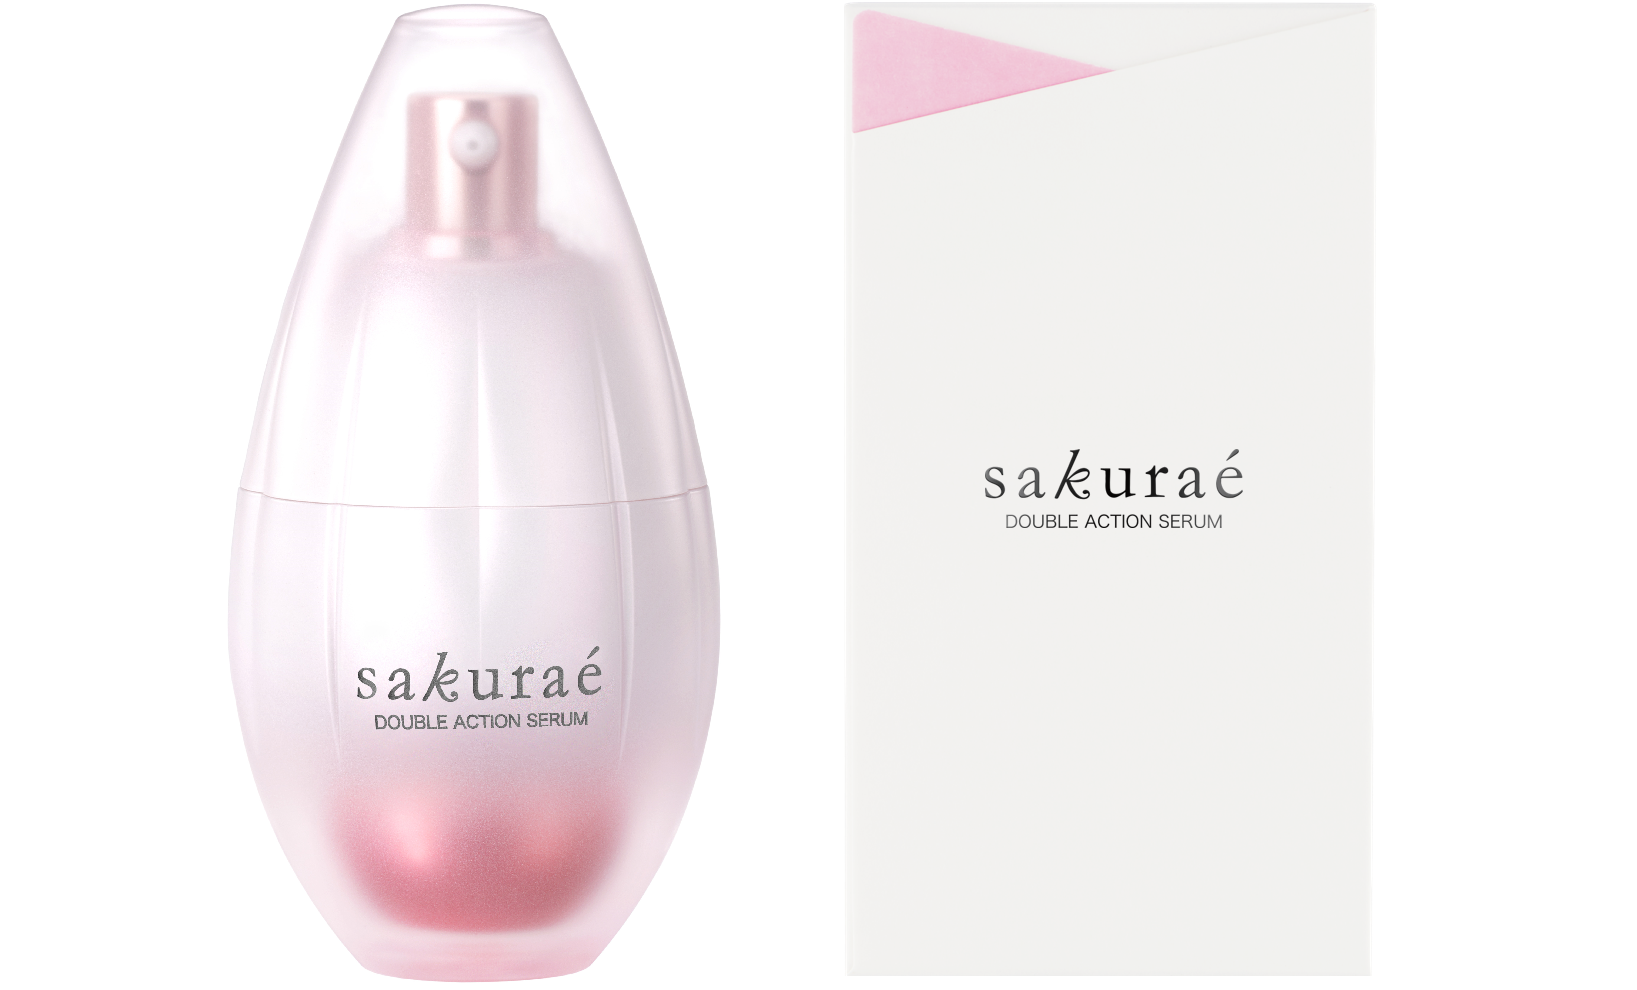 New skin care brand Introducing Sakuraé Double Action Serum